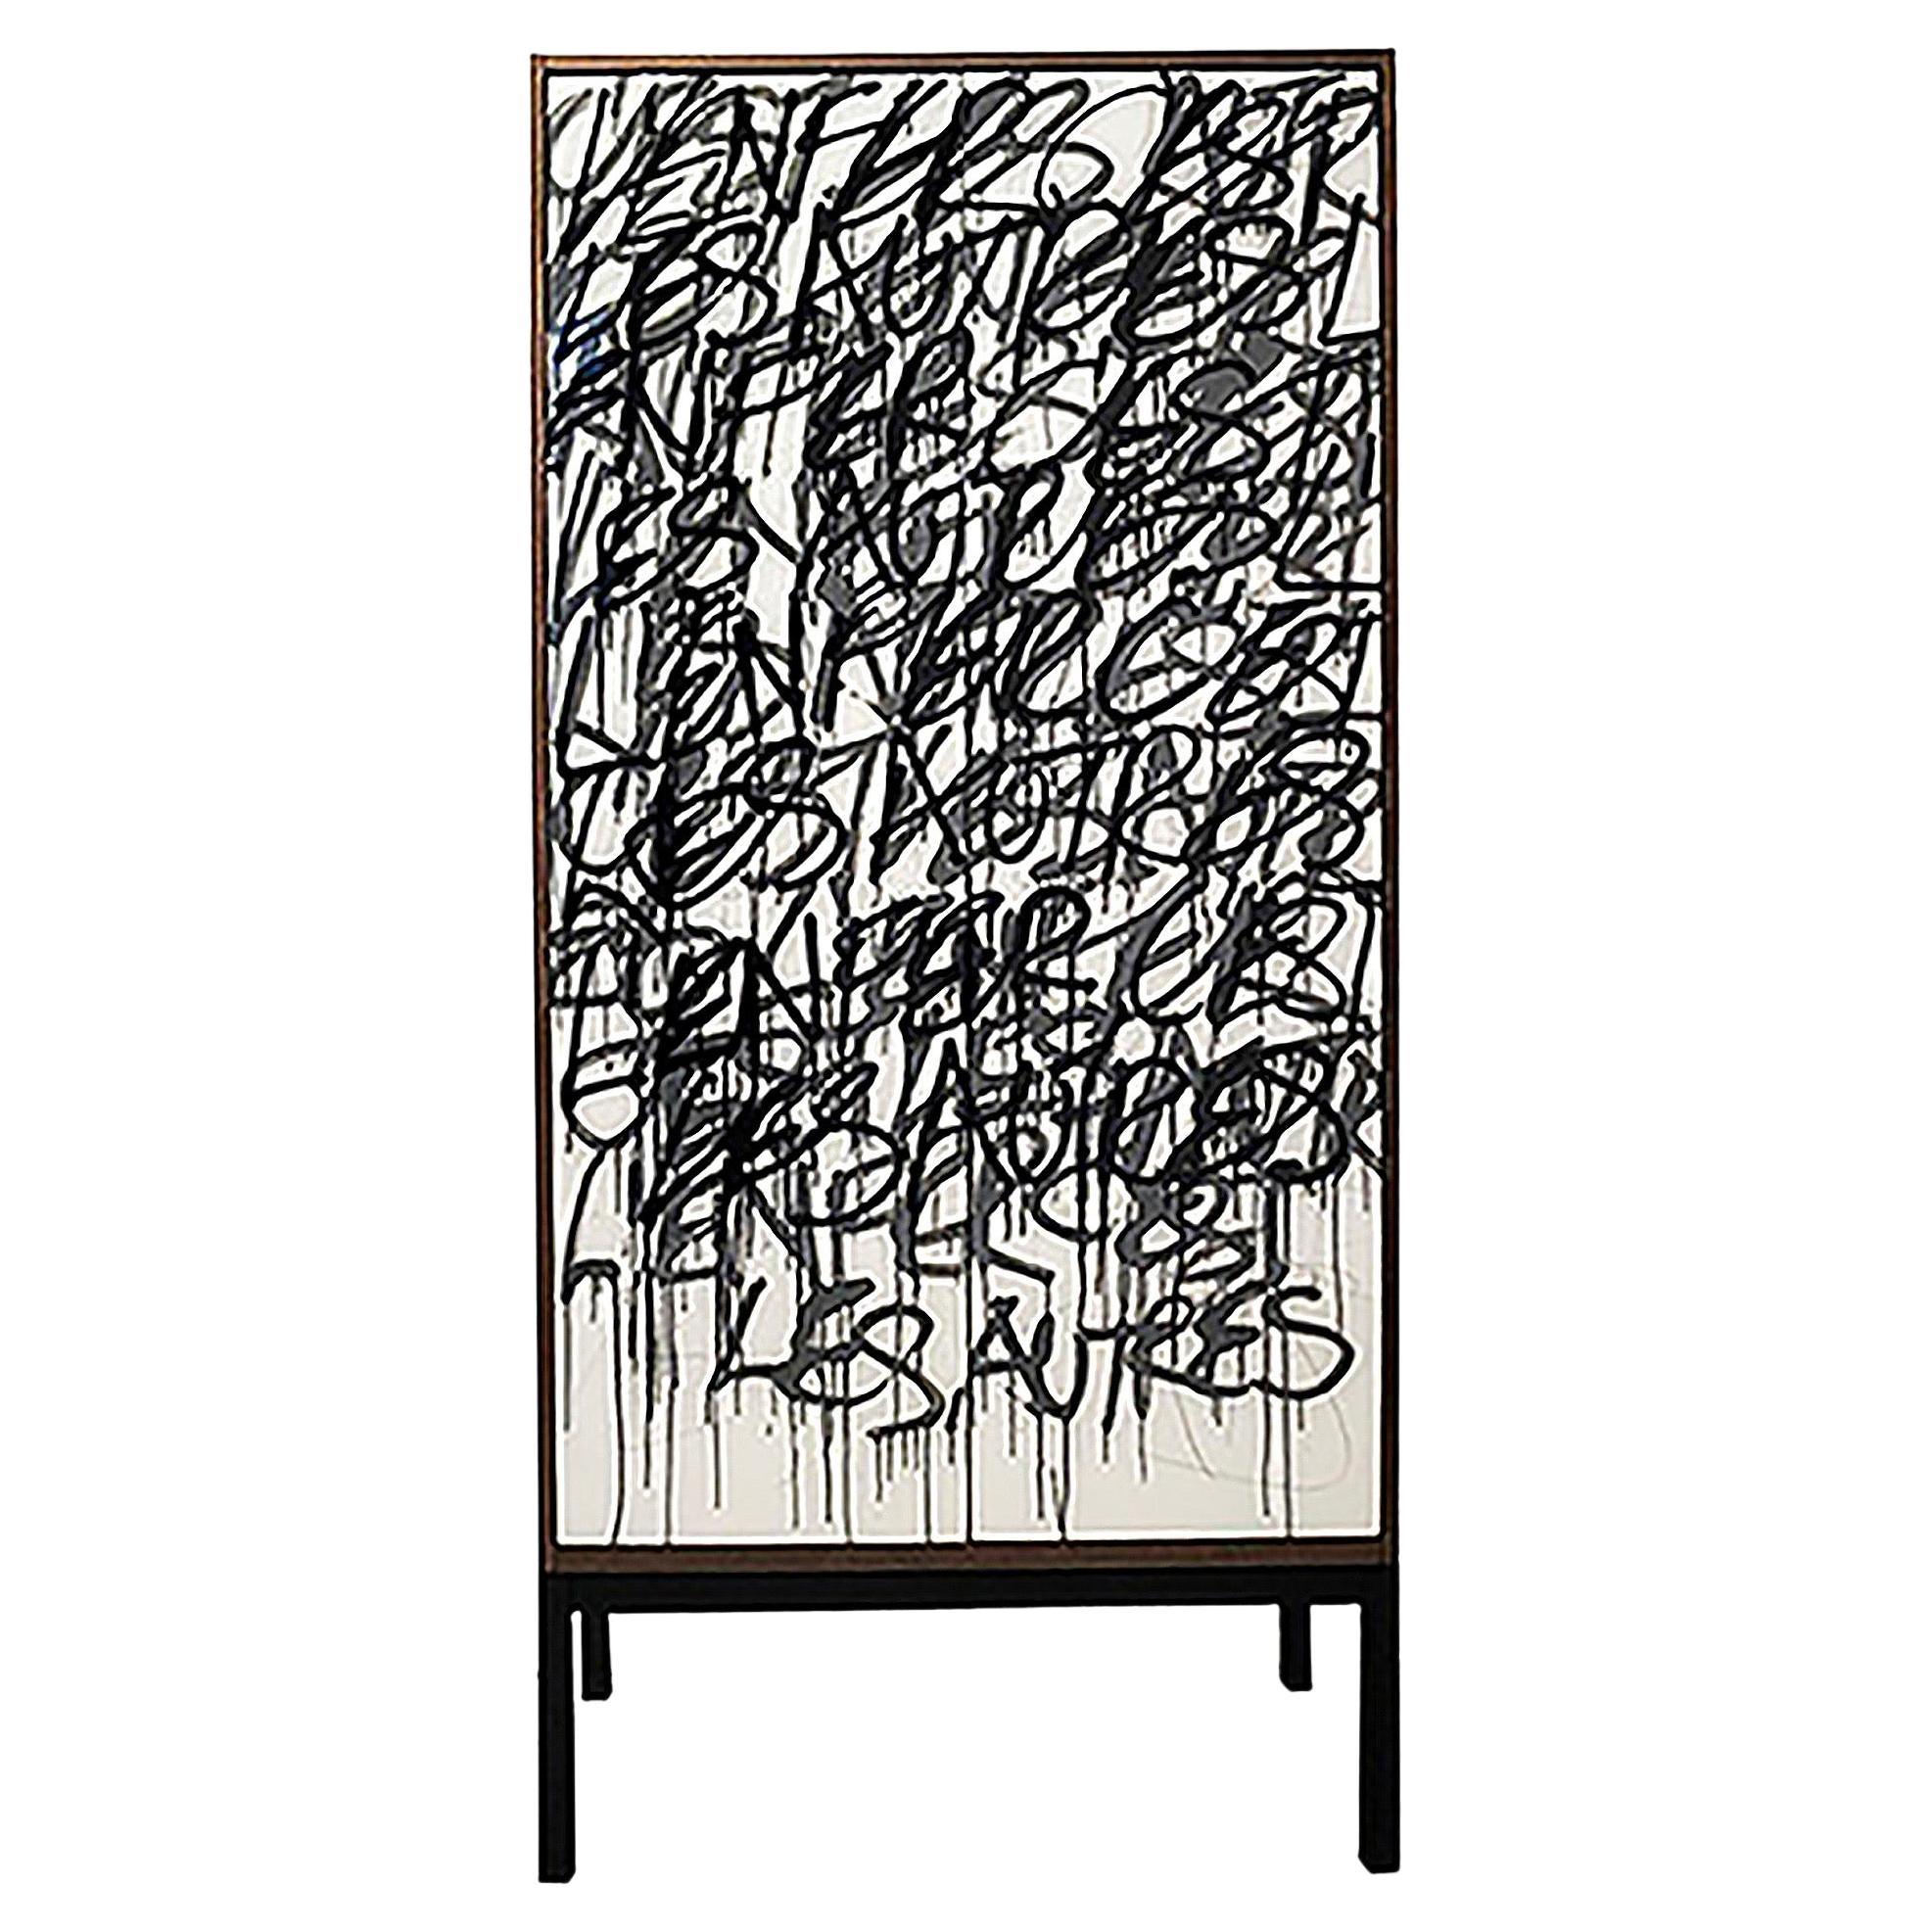 Der M.C. Bar Cabinet basiert auf unserem Graffiti-Schrank Say It Again.

Der Kunde kann Worte vorgeben, die der Künstler in das Kunstwerk auf den Türen einarbeitet und so den Schrank zu einem Unikat macht.

Das Äußere ist aus Nussbaum, das Innere